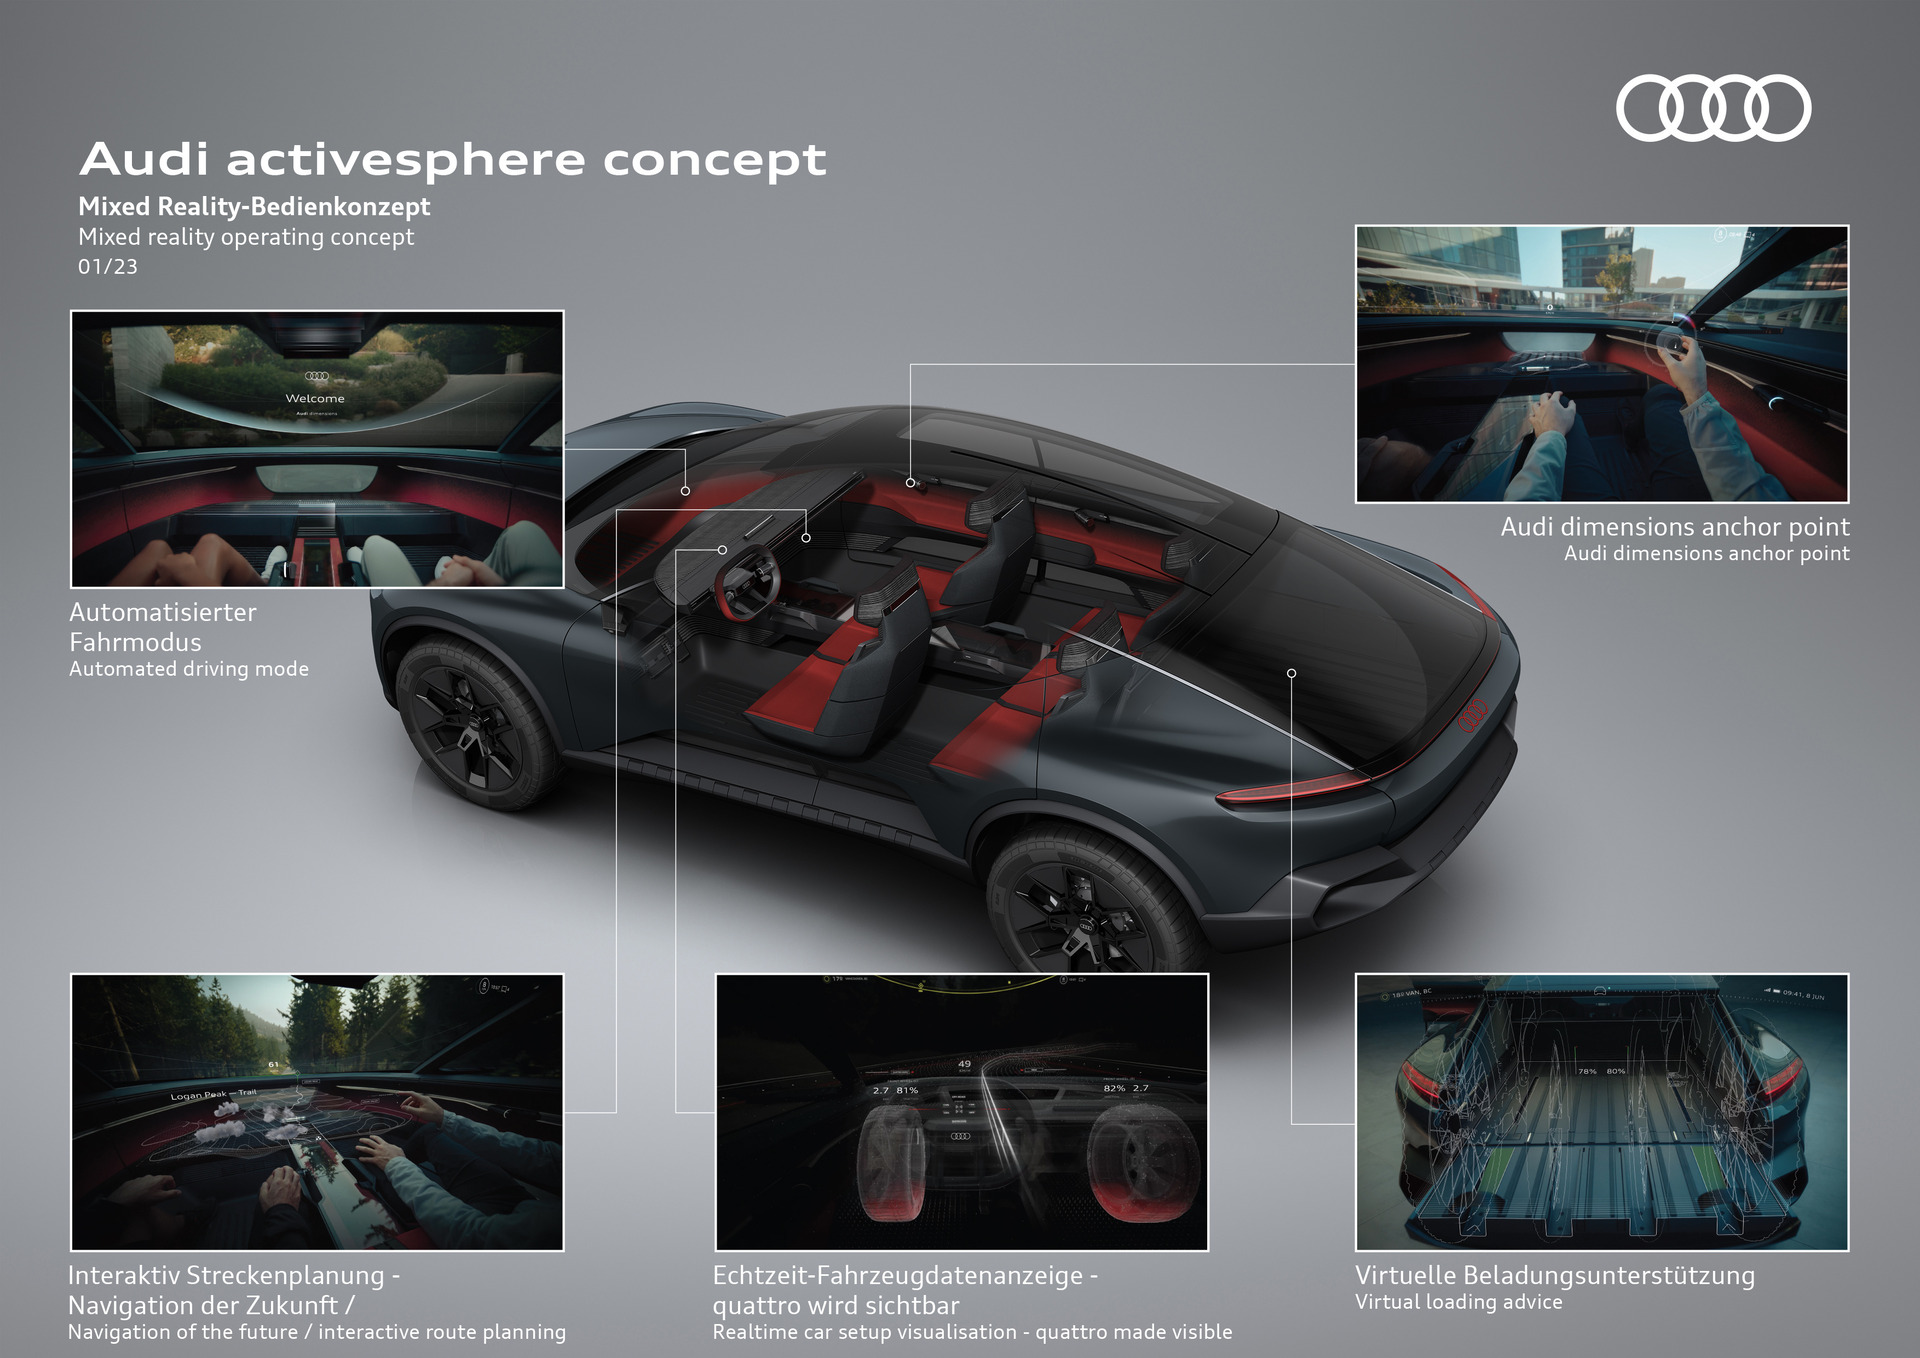 Audi komplettiert mit dem Audi activesphere concept ihr Quartett